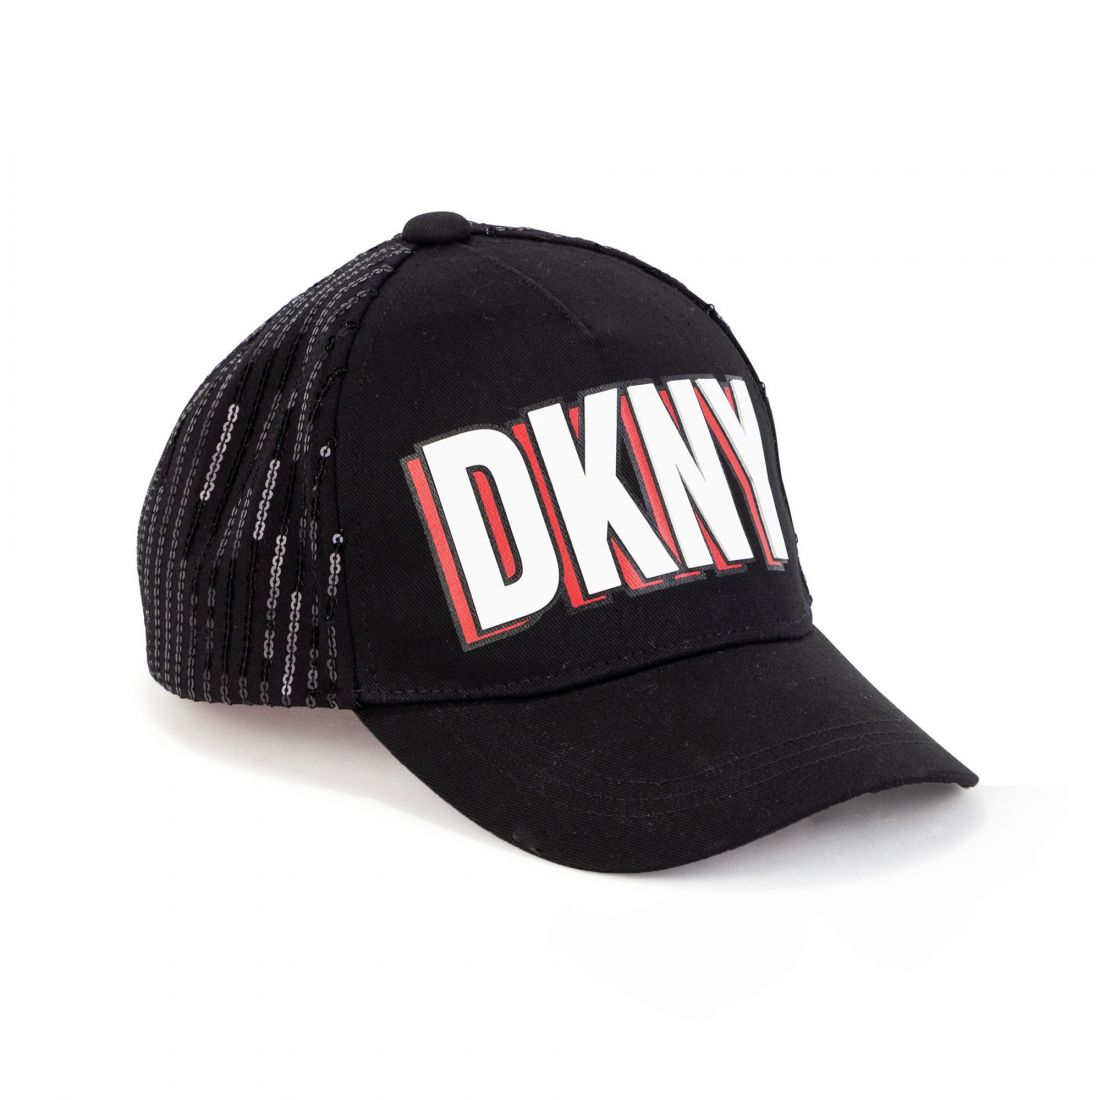  D.K.N.Y Hat